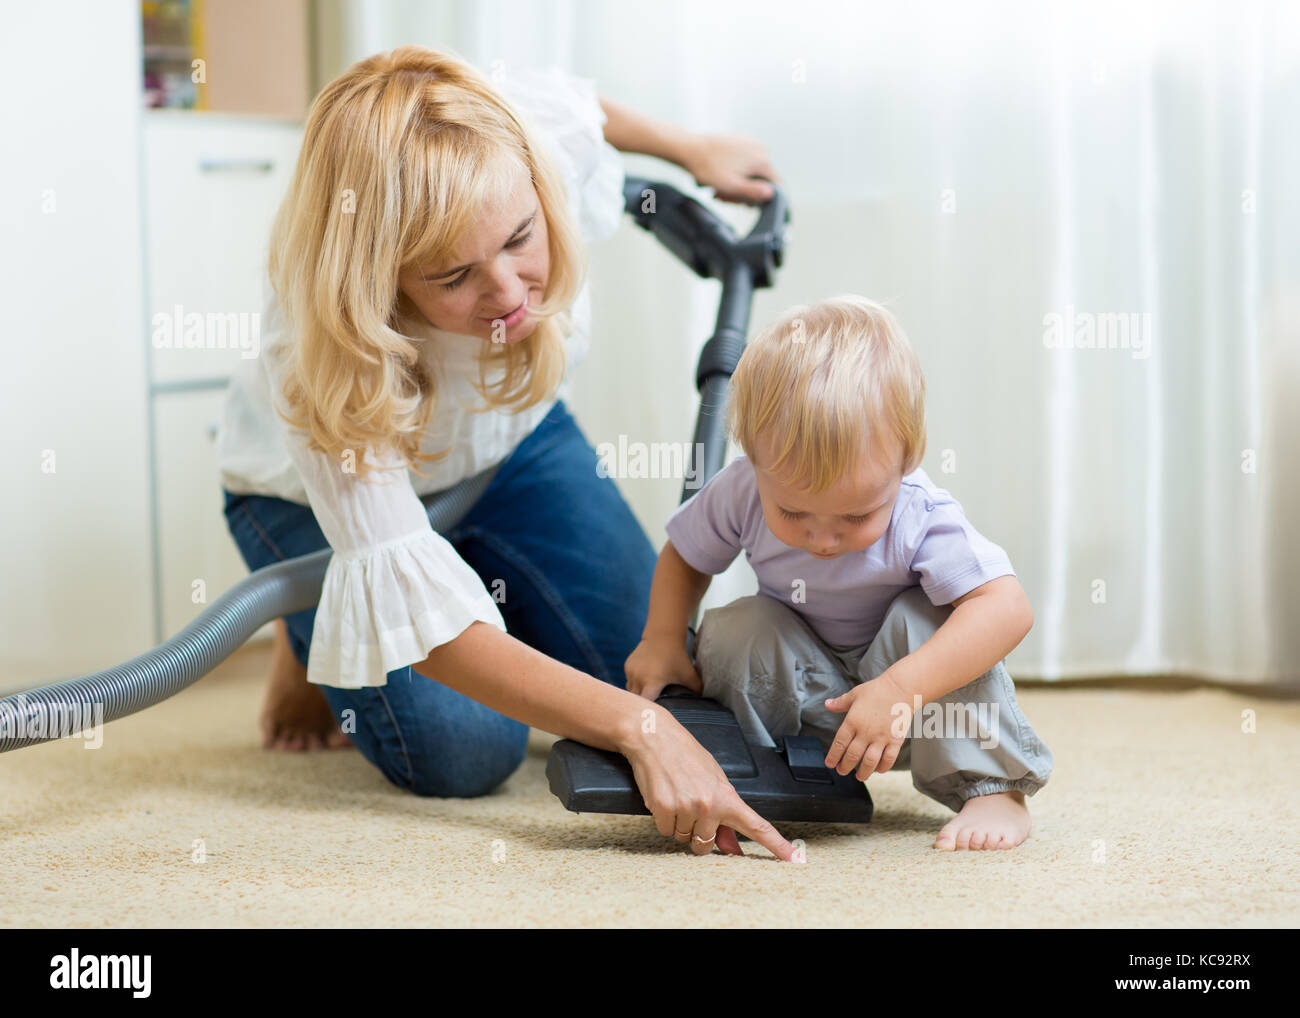 Familie Mutter und Kind Junge Reinigung der Zimmer mit Staubsauger - Hausarbeit Stockfoto